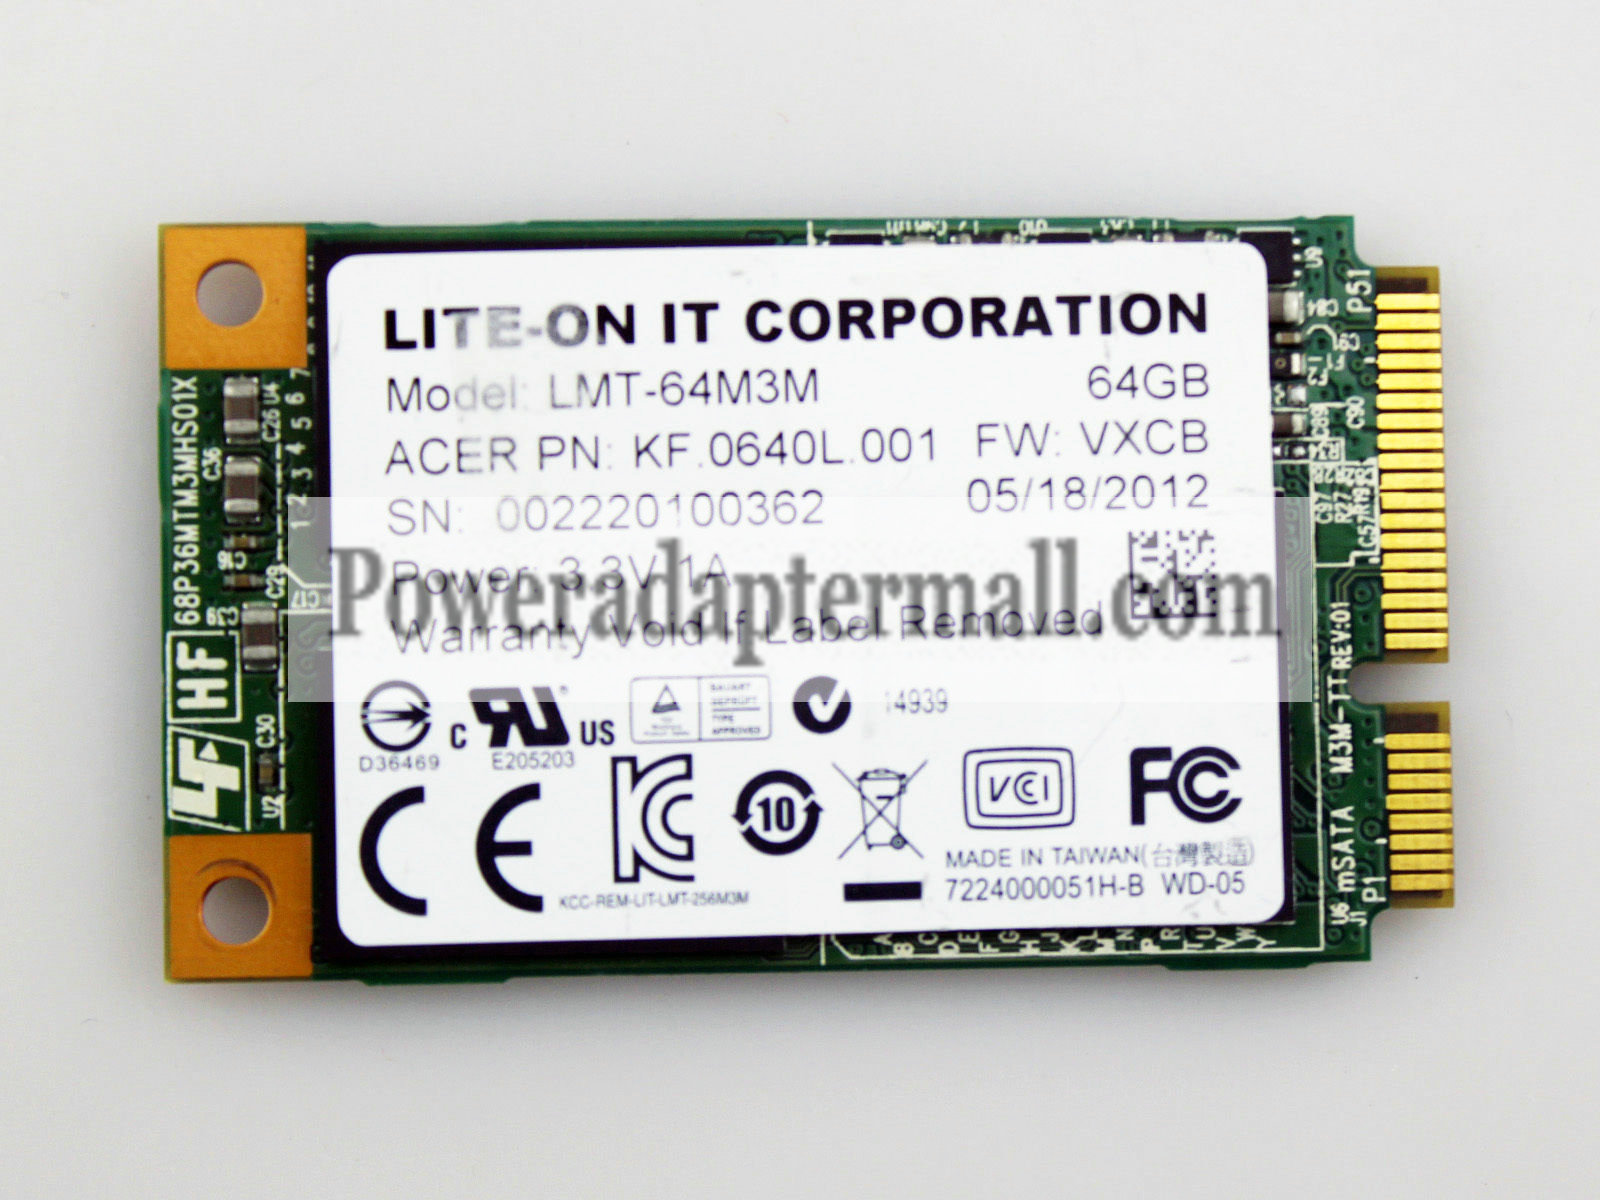 Lite-on it LMT-64M3M MSATA 64GB SSD Solid State Drive KF 0640L